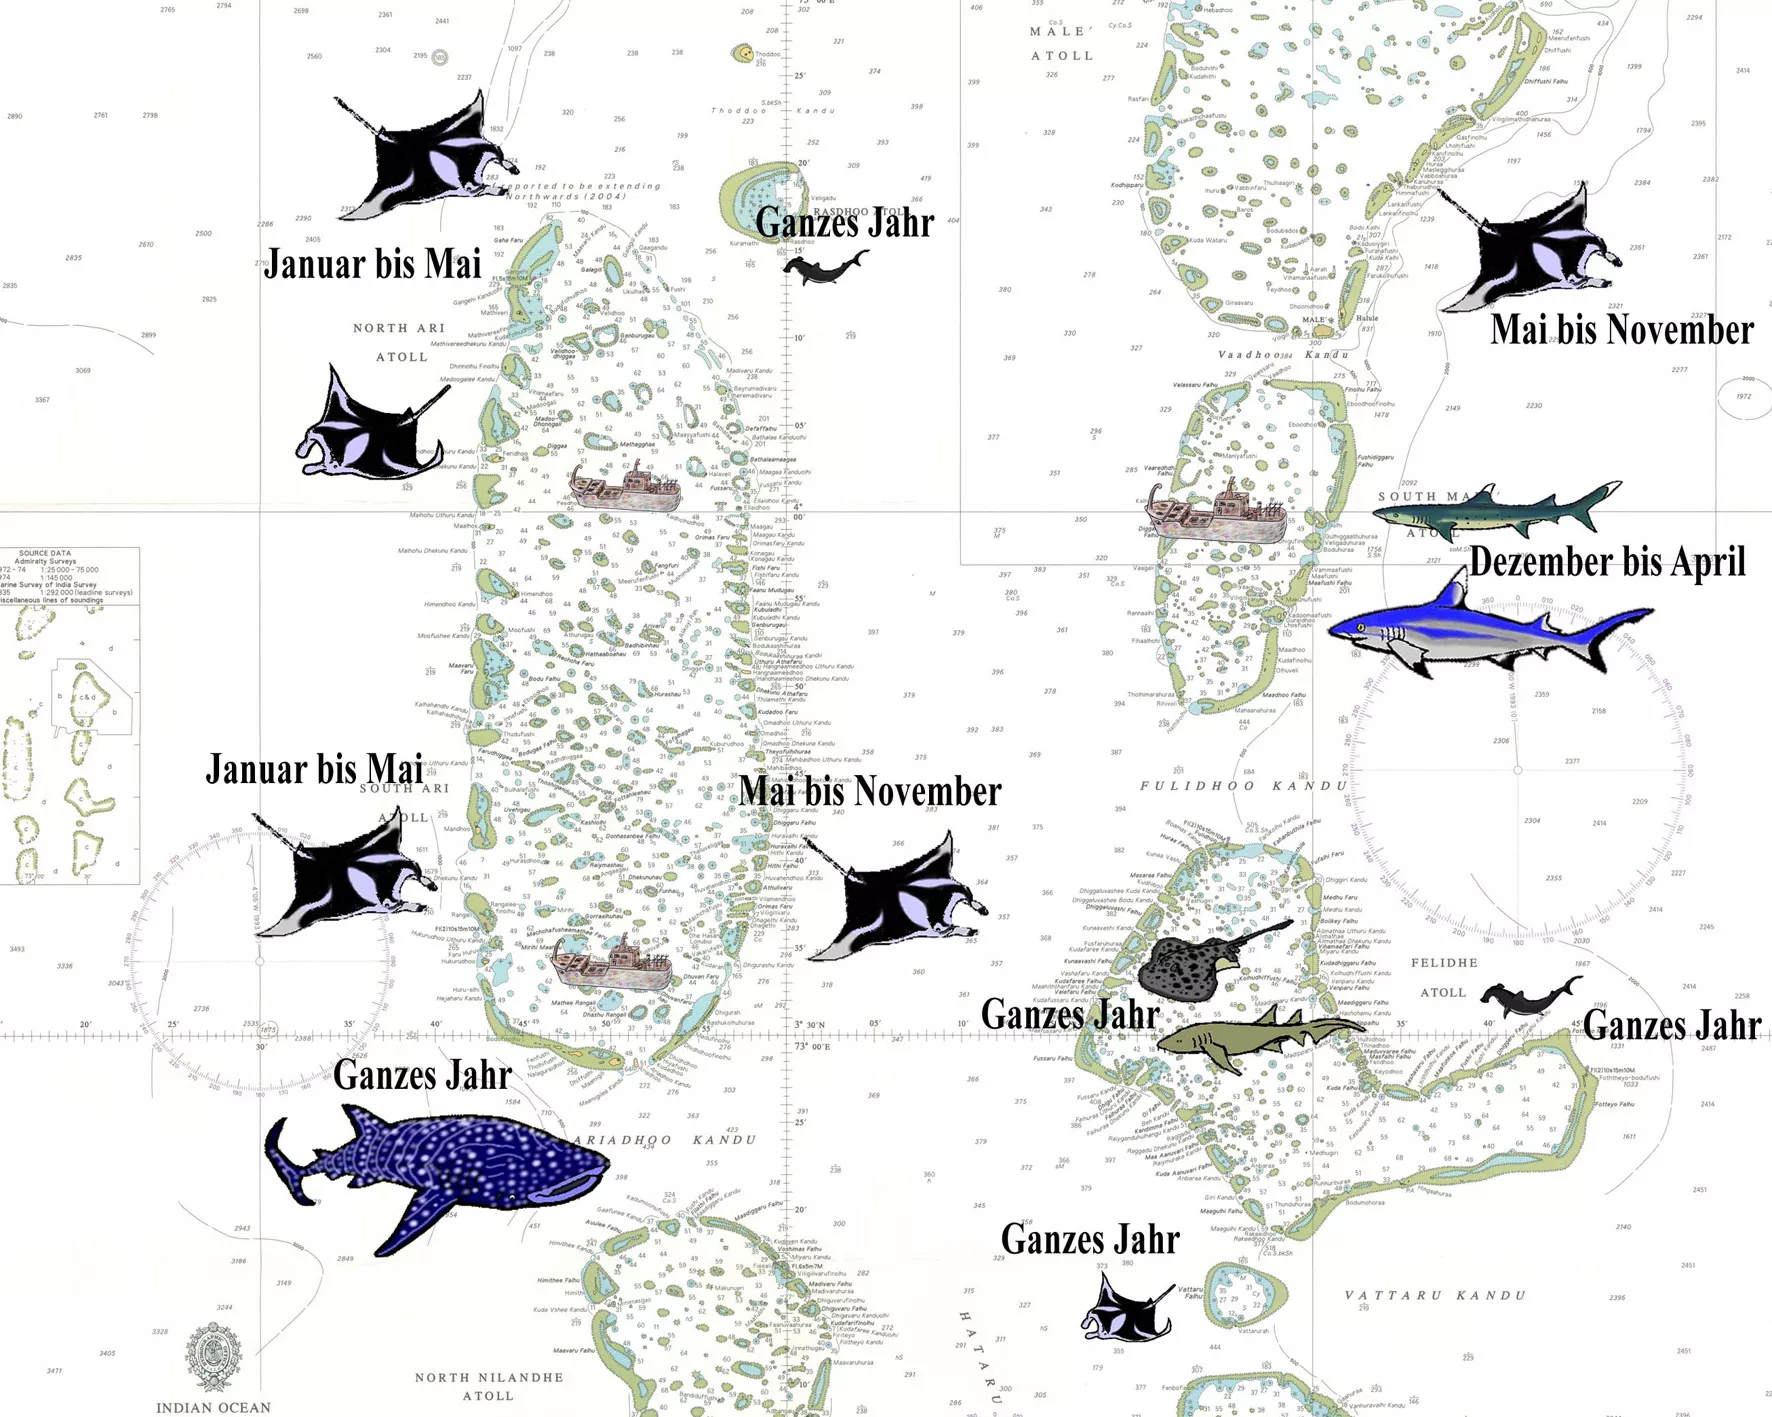 Wo finde ich die Grossfische? Grossfische – Haie, Mantarochen und Walhaie gibt es teilweise das ganze Jahr.